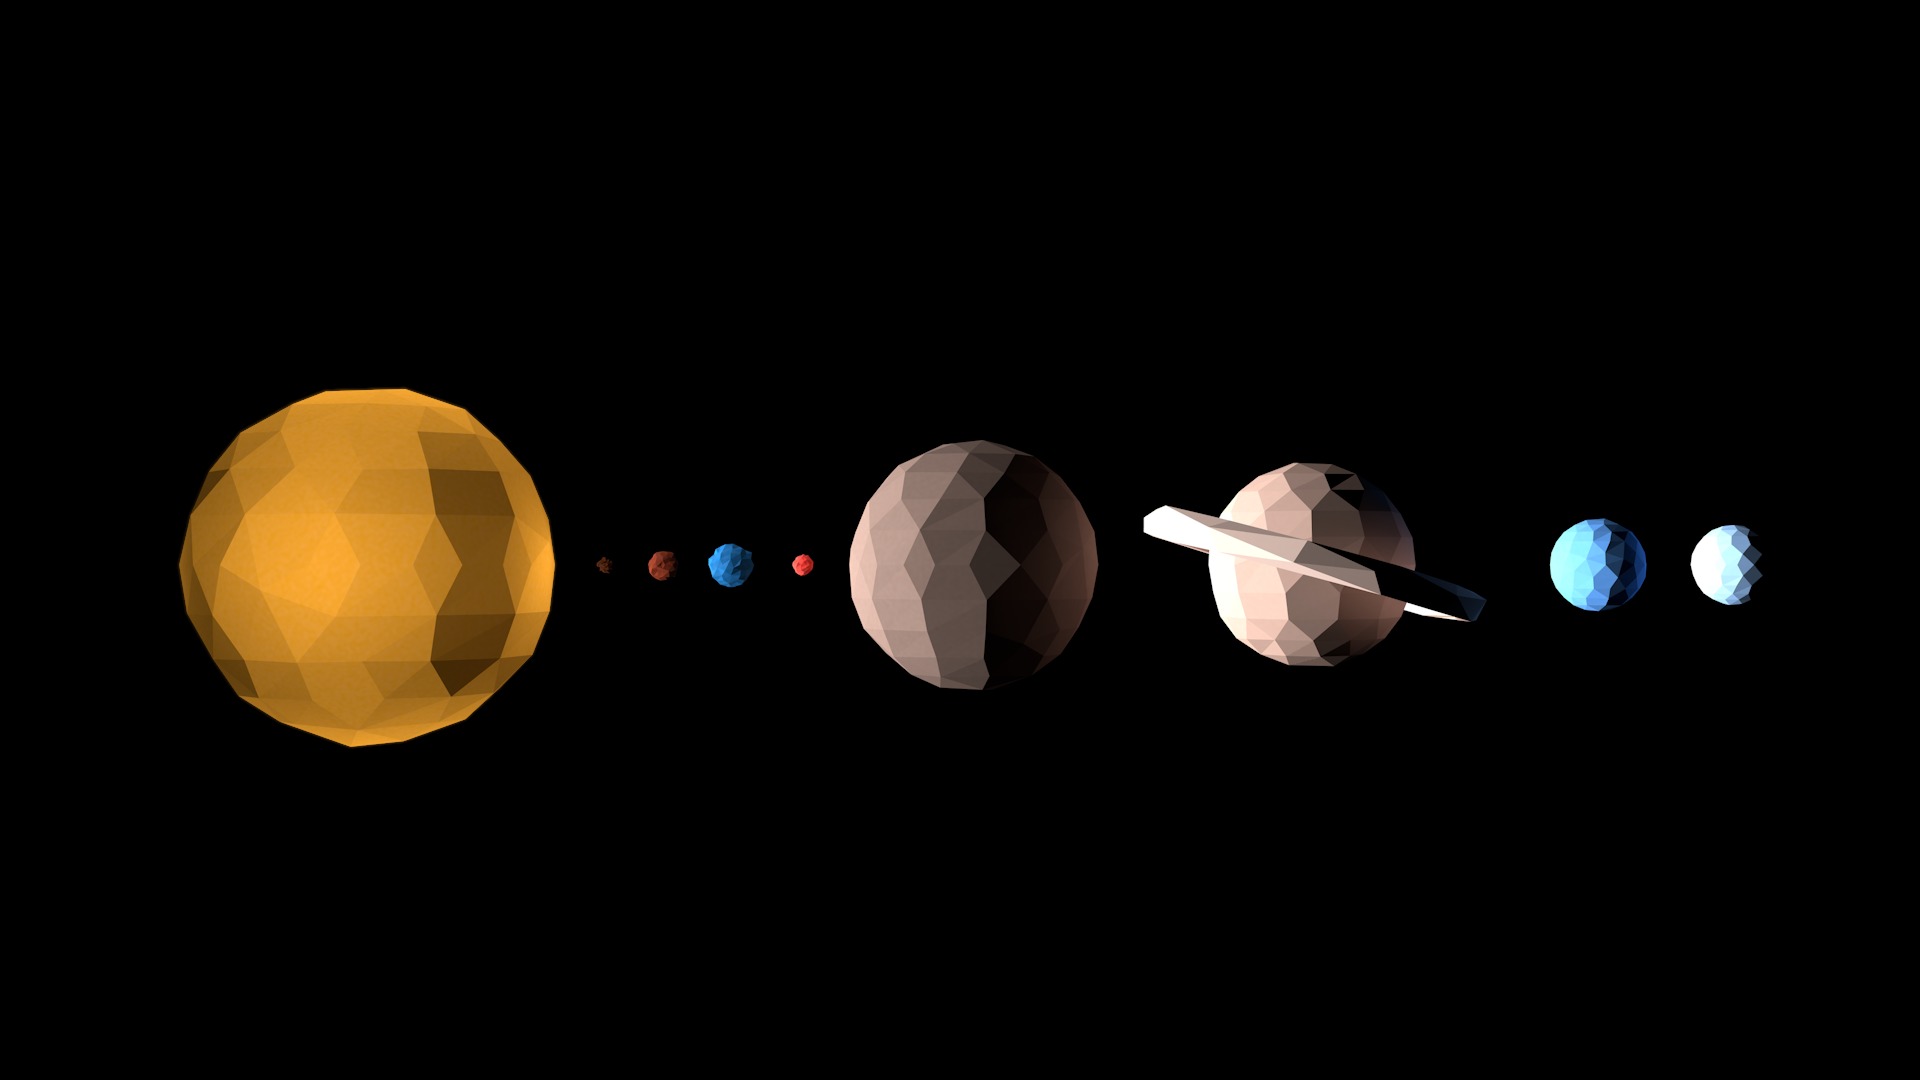 Solar System Image Free Download Pixelstalknet